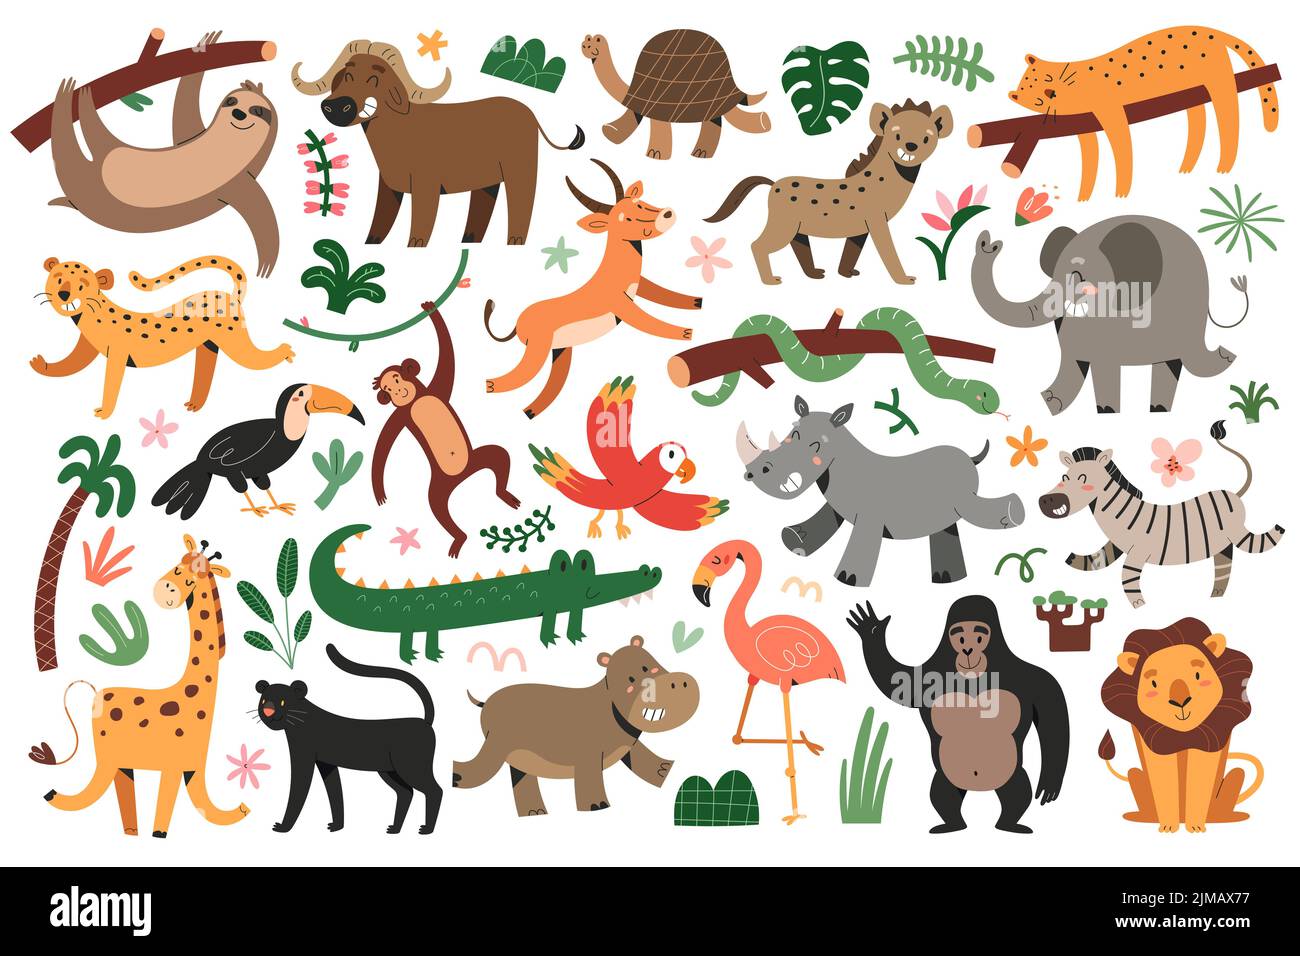 Jungle Tiere bungle, tropischer Leopard, Katzen, tanzende Giraffe und Zebra, schlafender jaguar, Satz von Vektor-Illustrationen, niedliche Charaktere für Stock Vektor